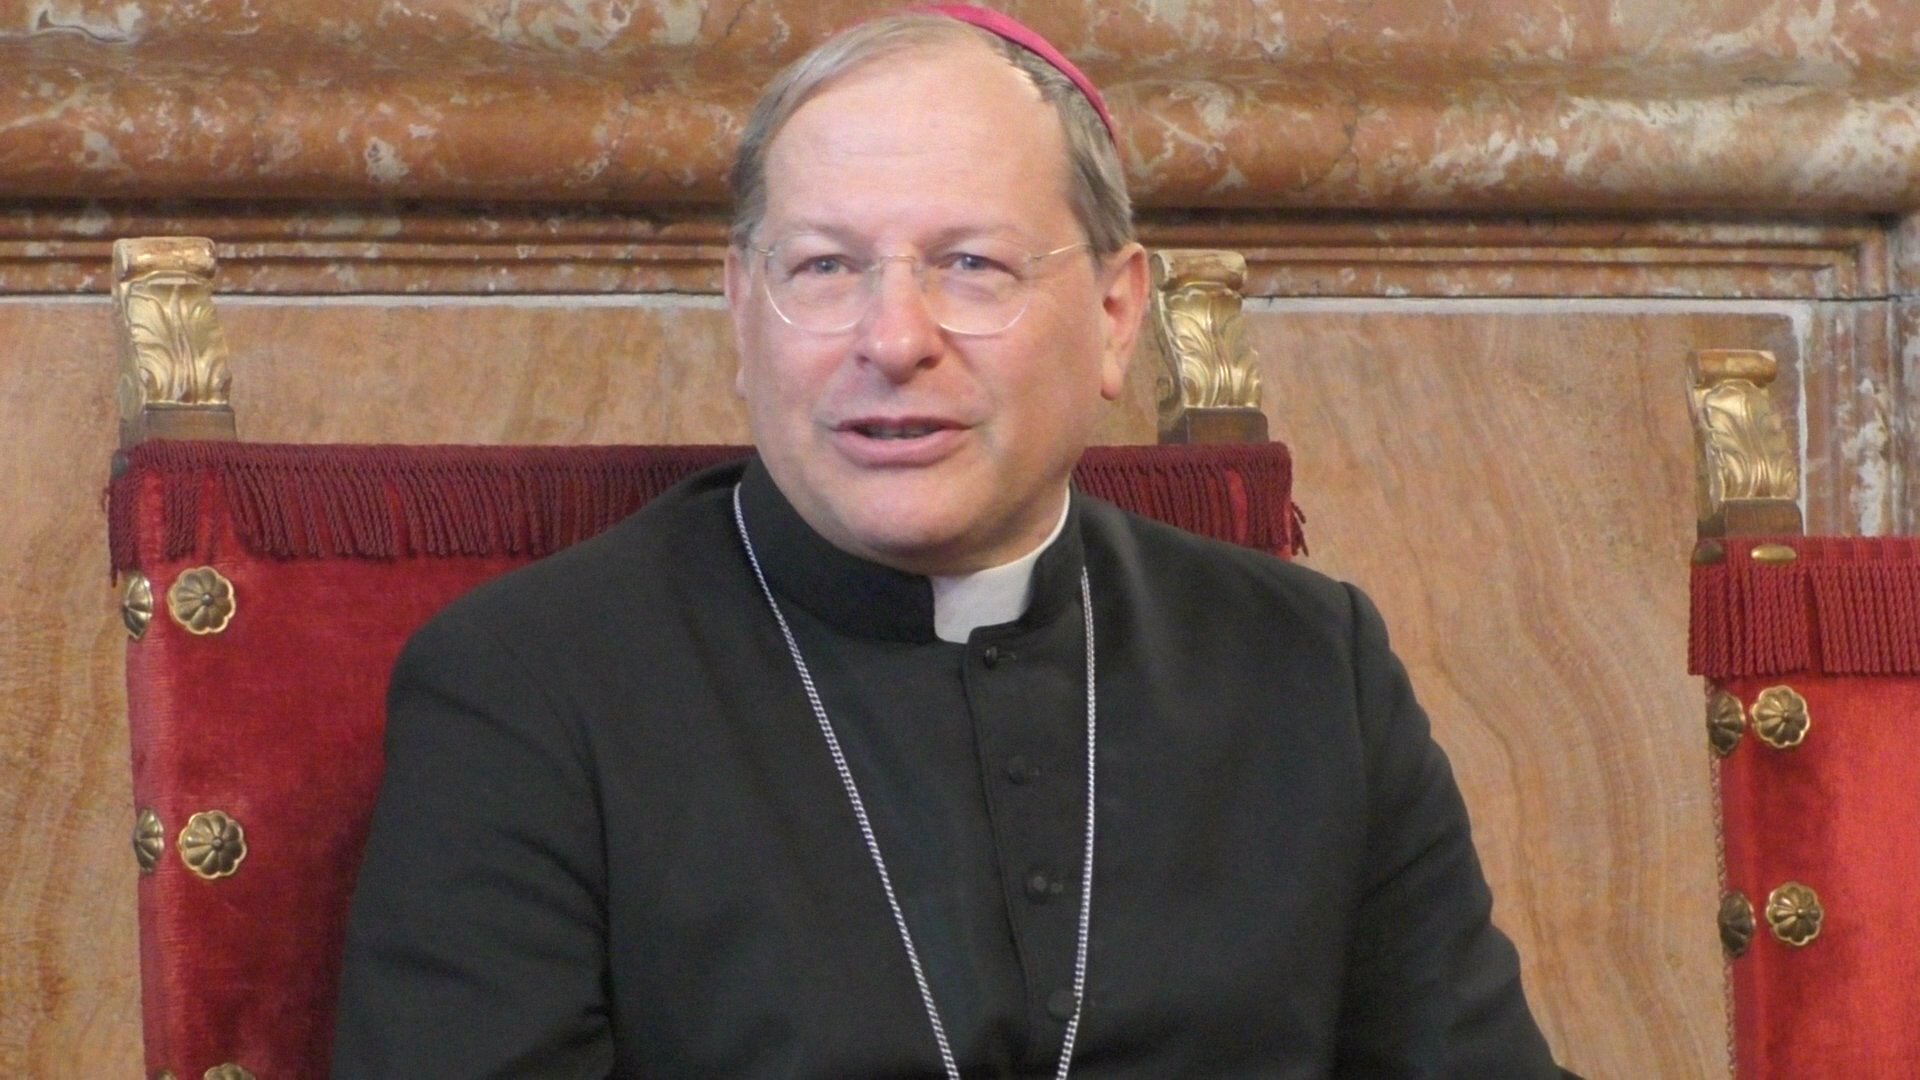 Vescovo Gallese sul no alle messe: “Io sono rigoroso. Serve prudenza, ha ragione il Papa”